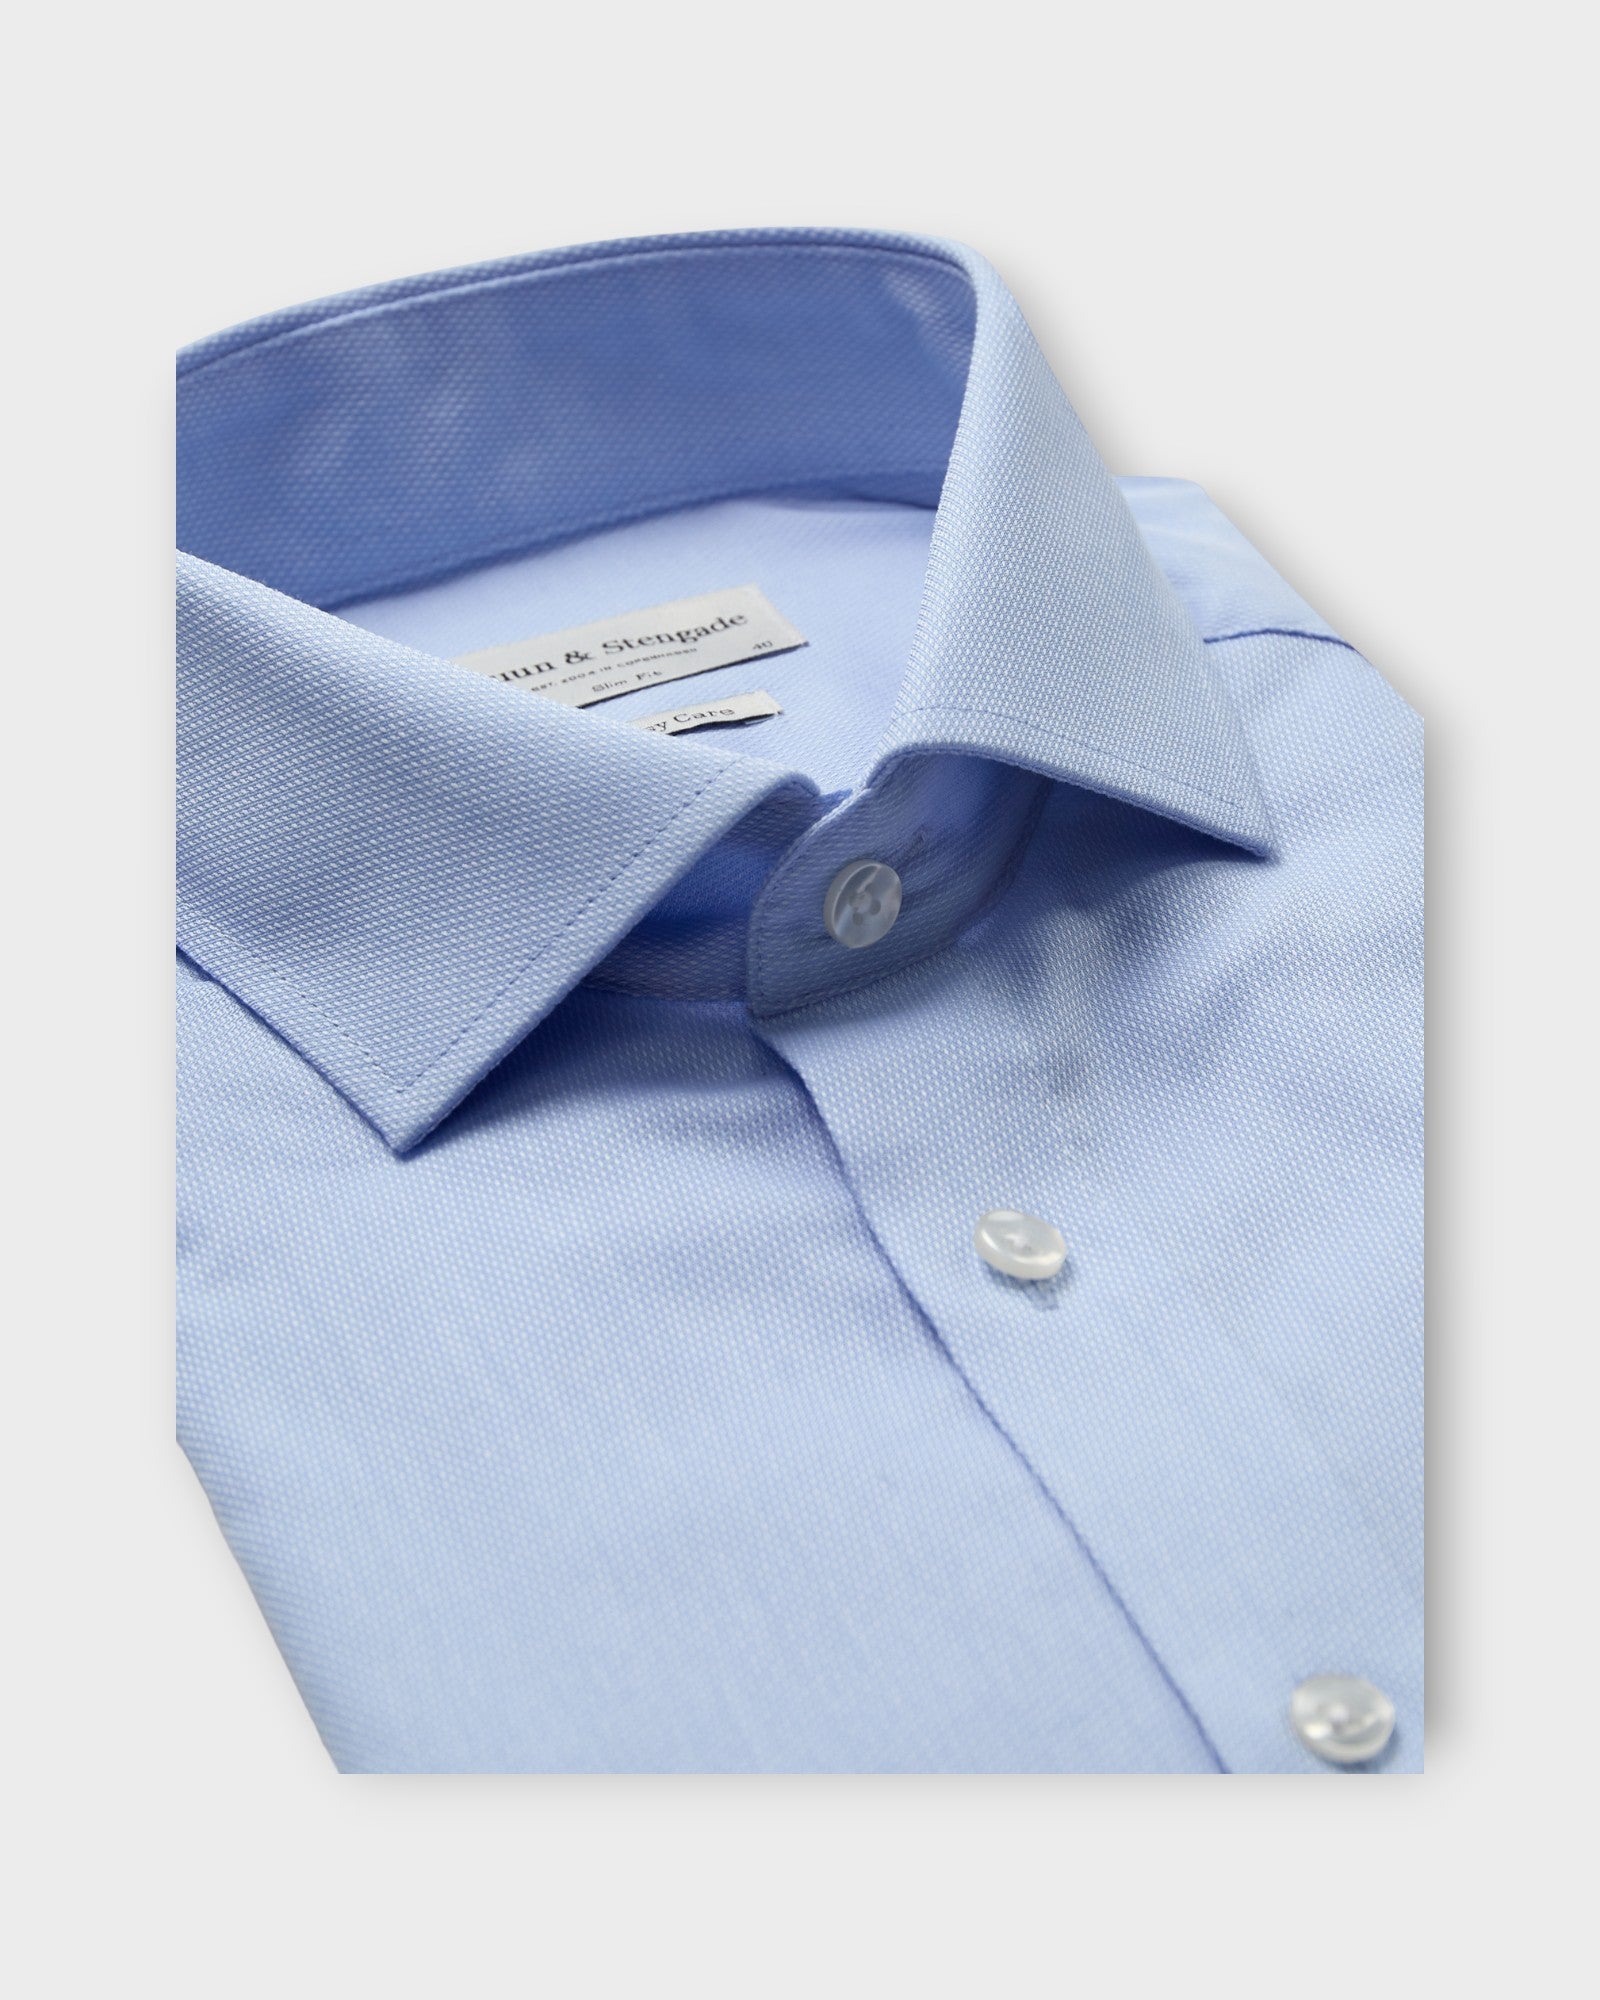 Jackson Slim Fit Shirt Light Blue fra Bruun og Stengade. Lyseblå langærmet skjorte til mænd. Her set i closeup.